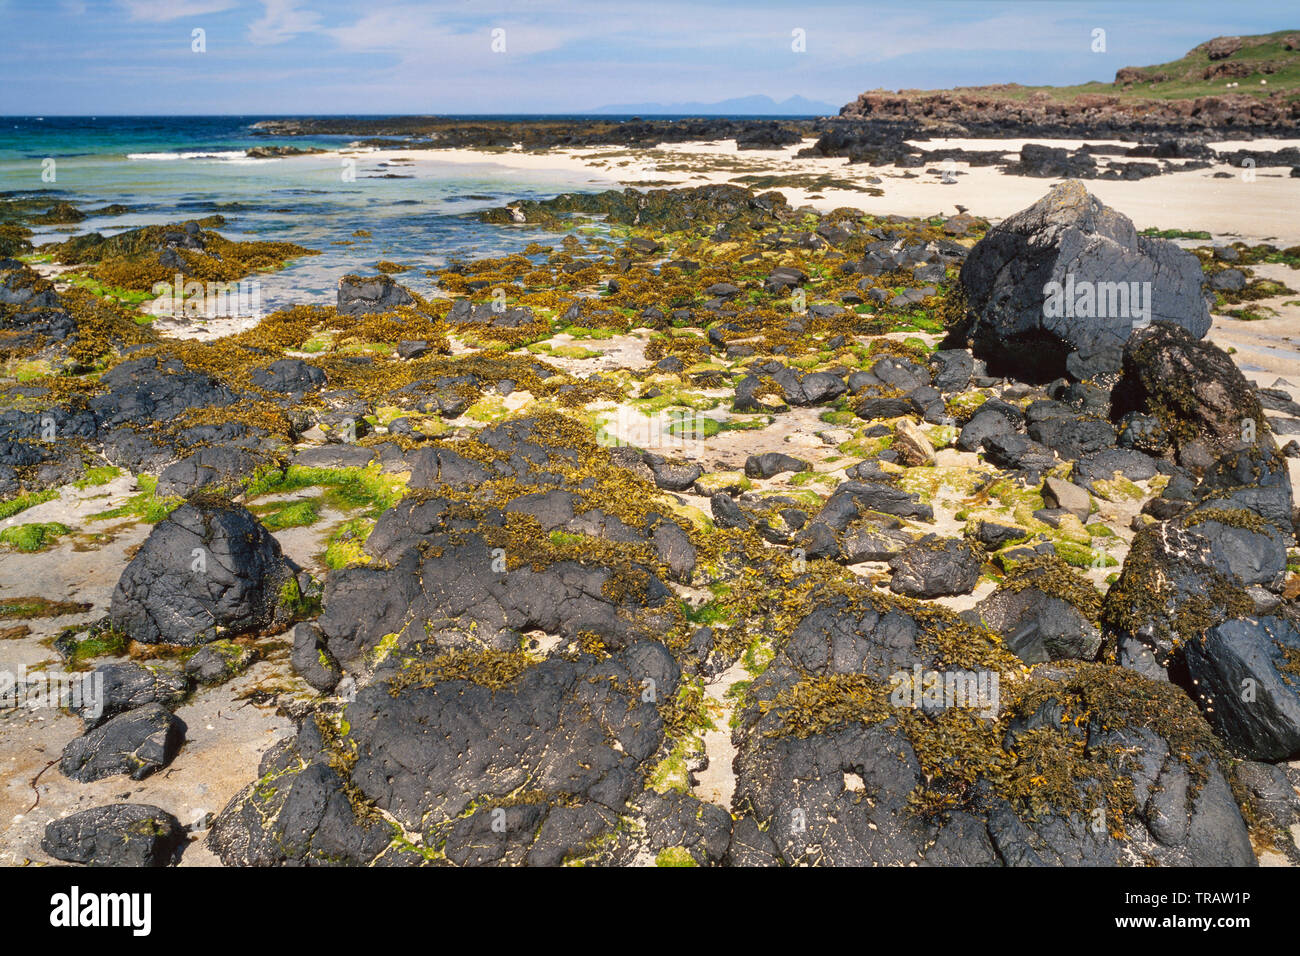 38, l'ouest des Highlands, Ecosse, scène de plage avec des algues sur les rochers, plage de sable propre Banque D'Images